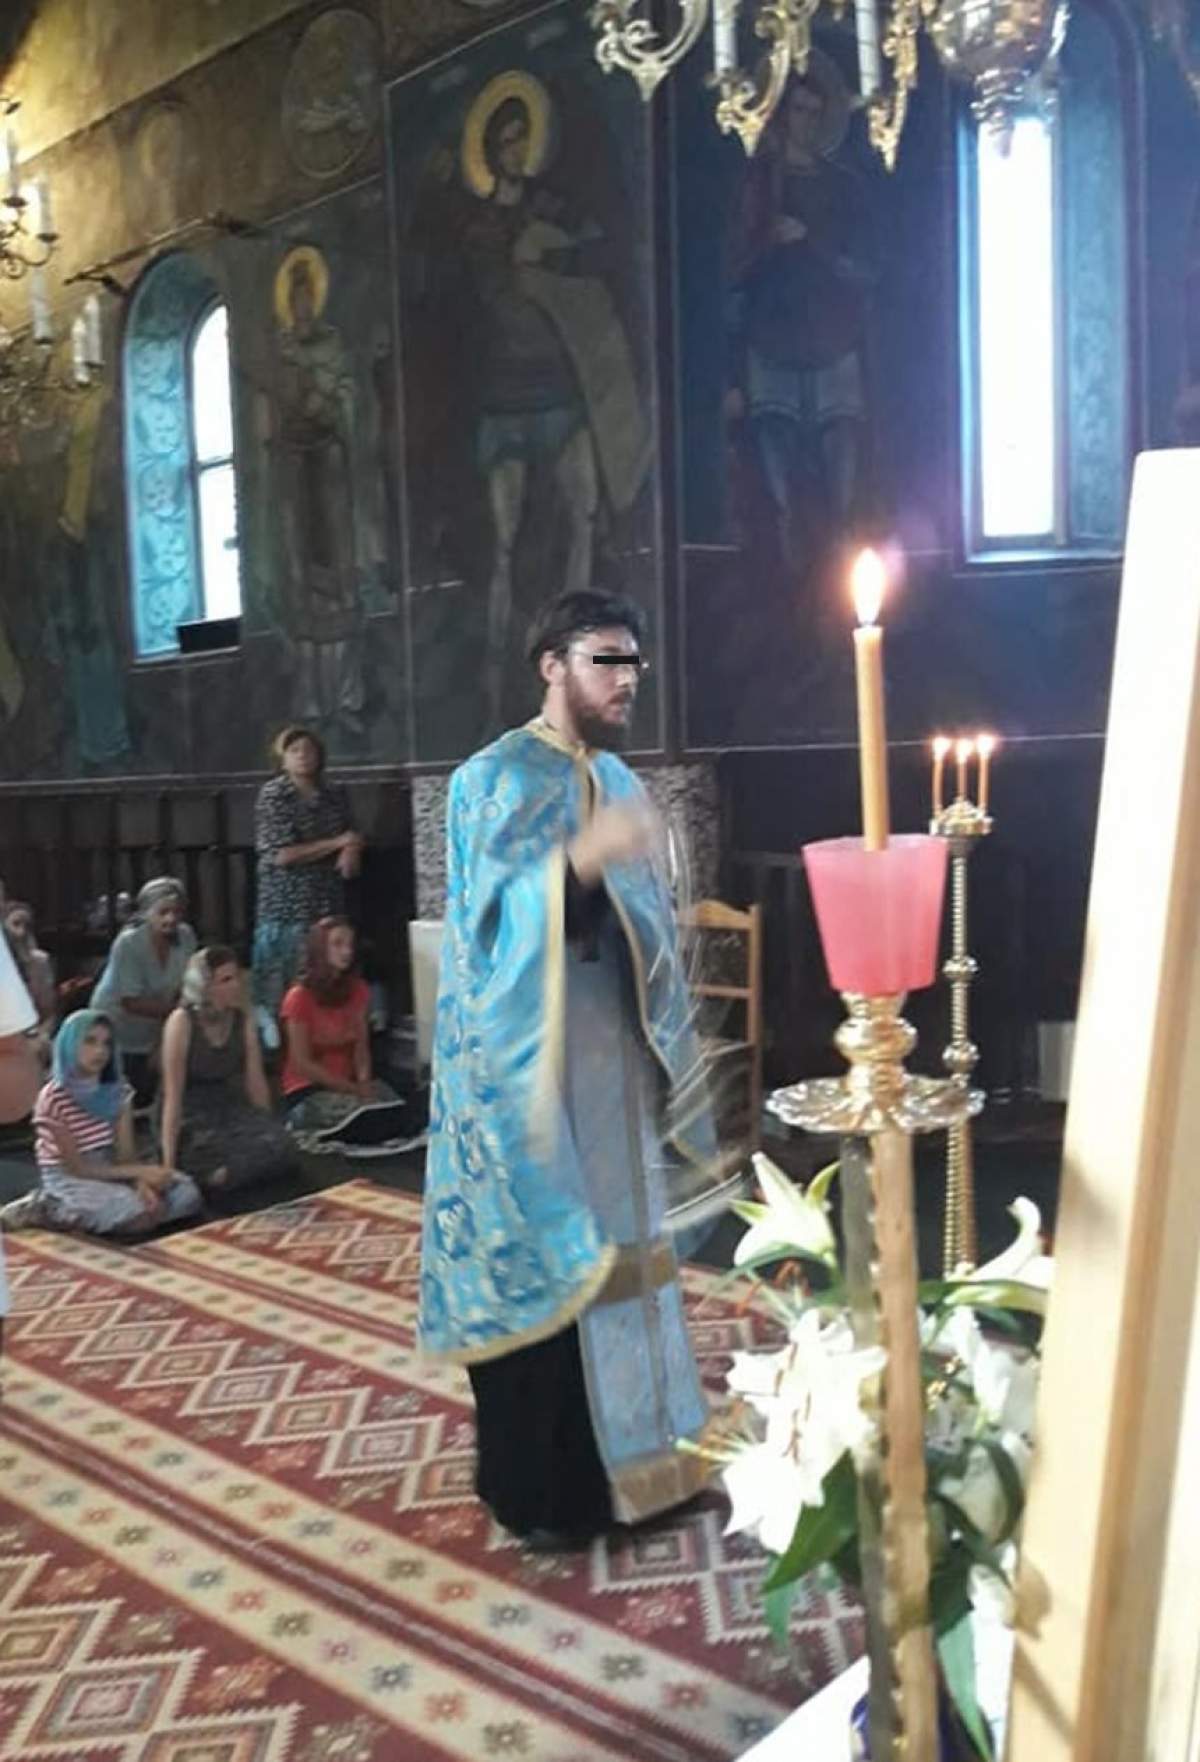 Emoţionant! Ultimul mesaj transmis de preotul Marius Bărăscu înainte de a muri în tragicul accident